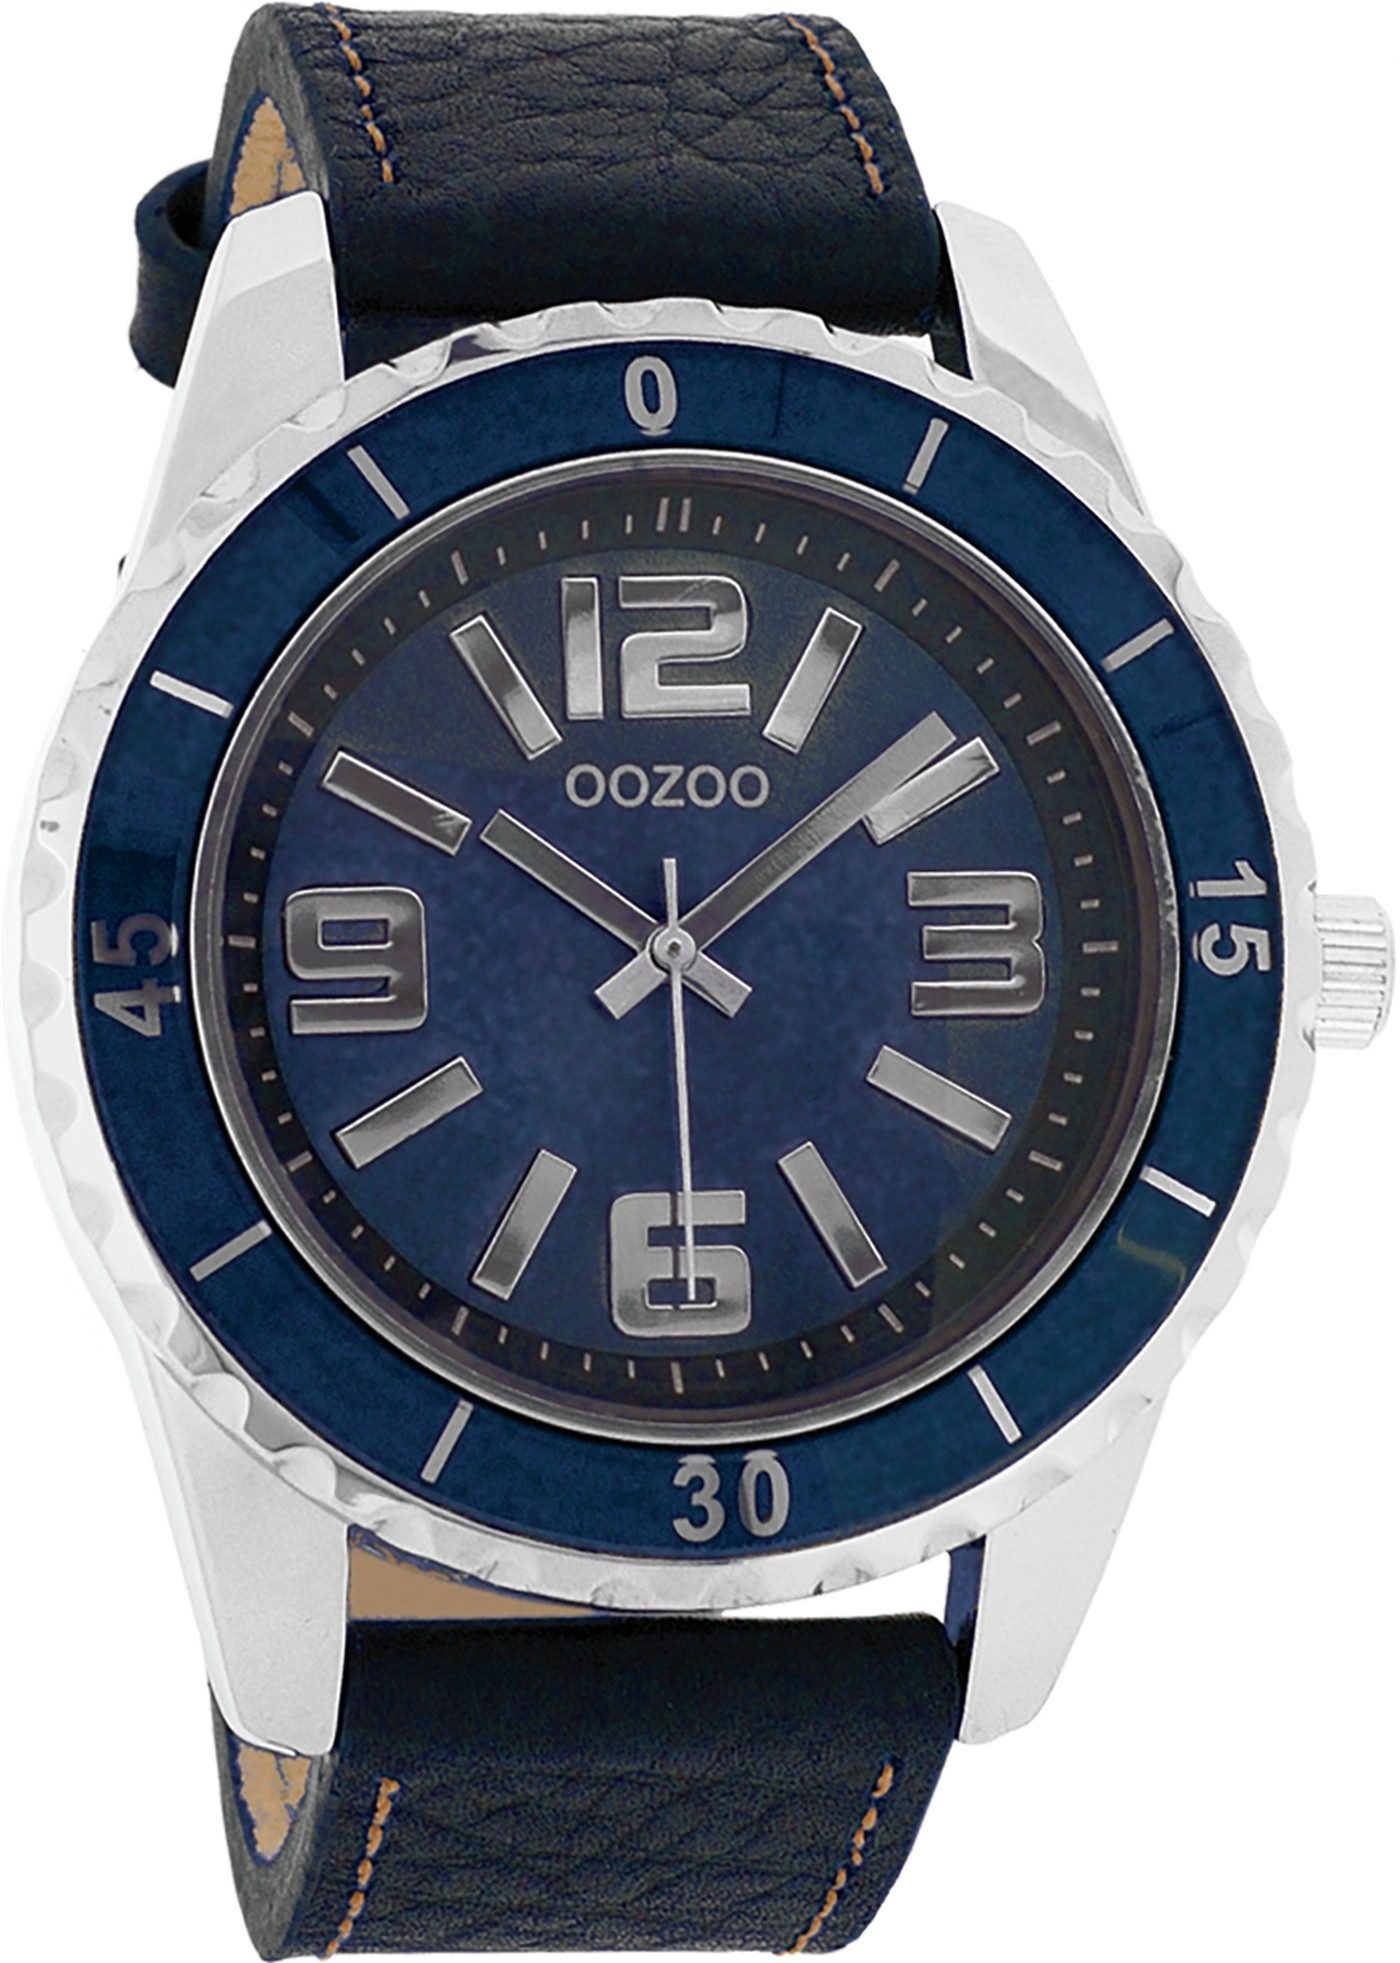 OOZOO Quarzuhr Oozoo Unisex Armbanduhr Vintage Series, (Analoguhr), Damen, Herrenuhr rund, groß (ca. 45mm) Lederarmband, Fashion-Style